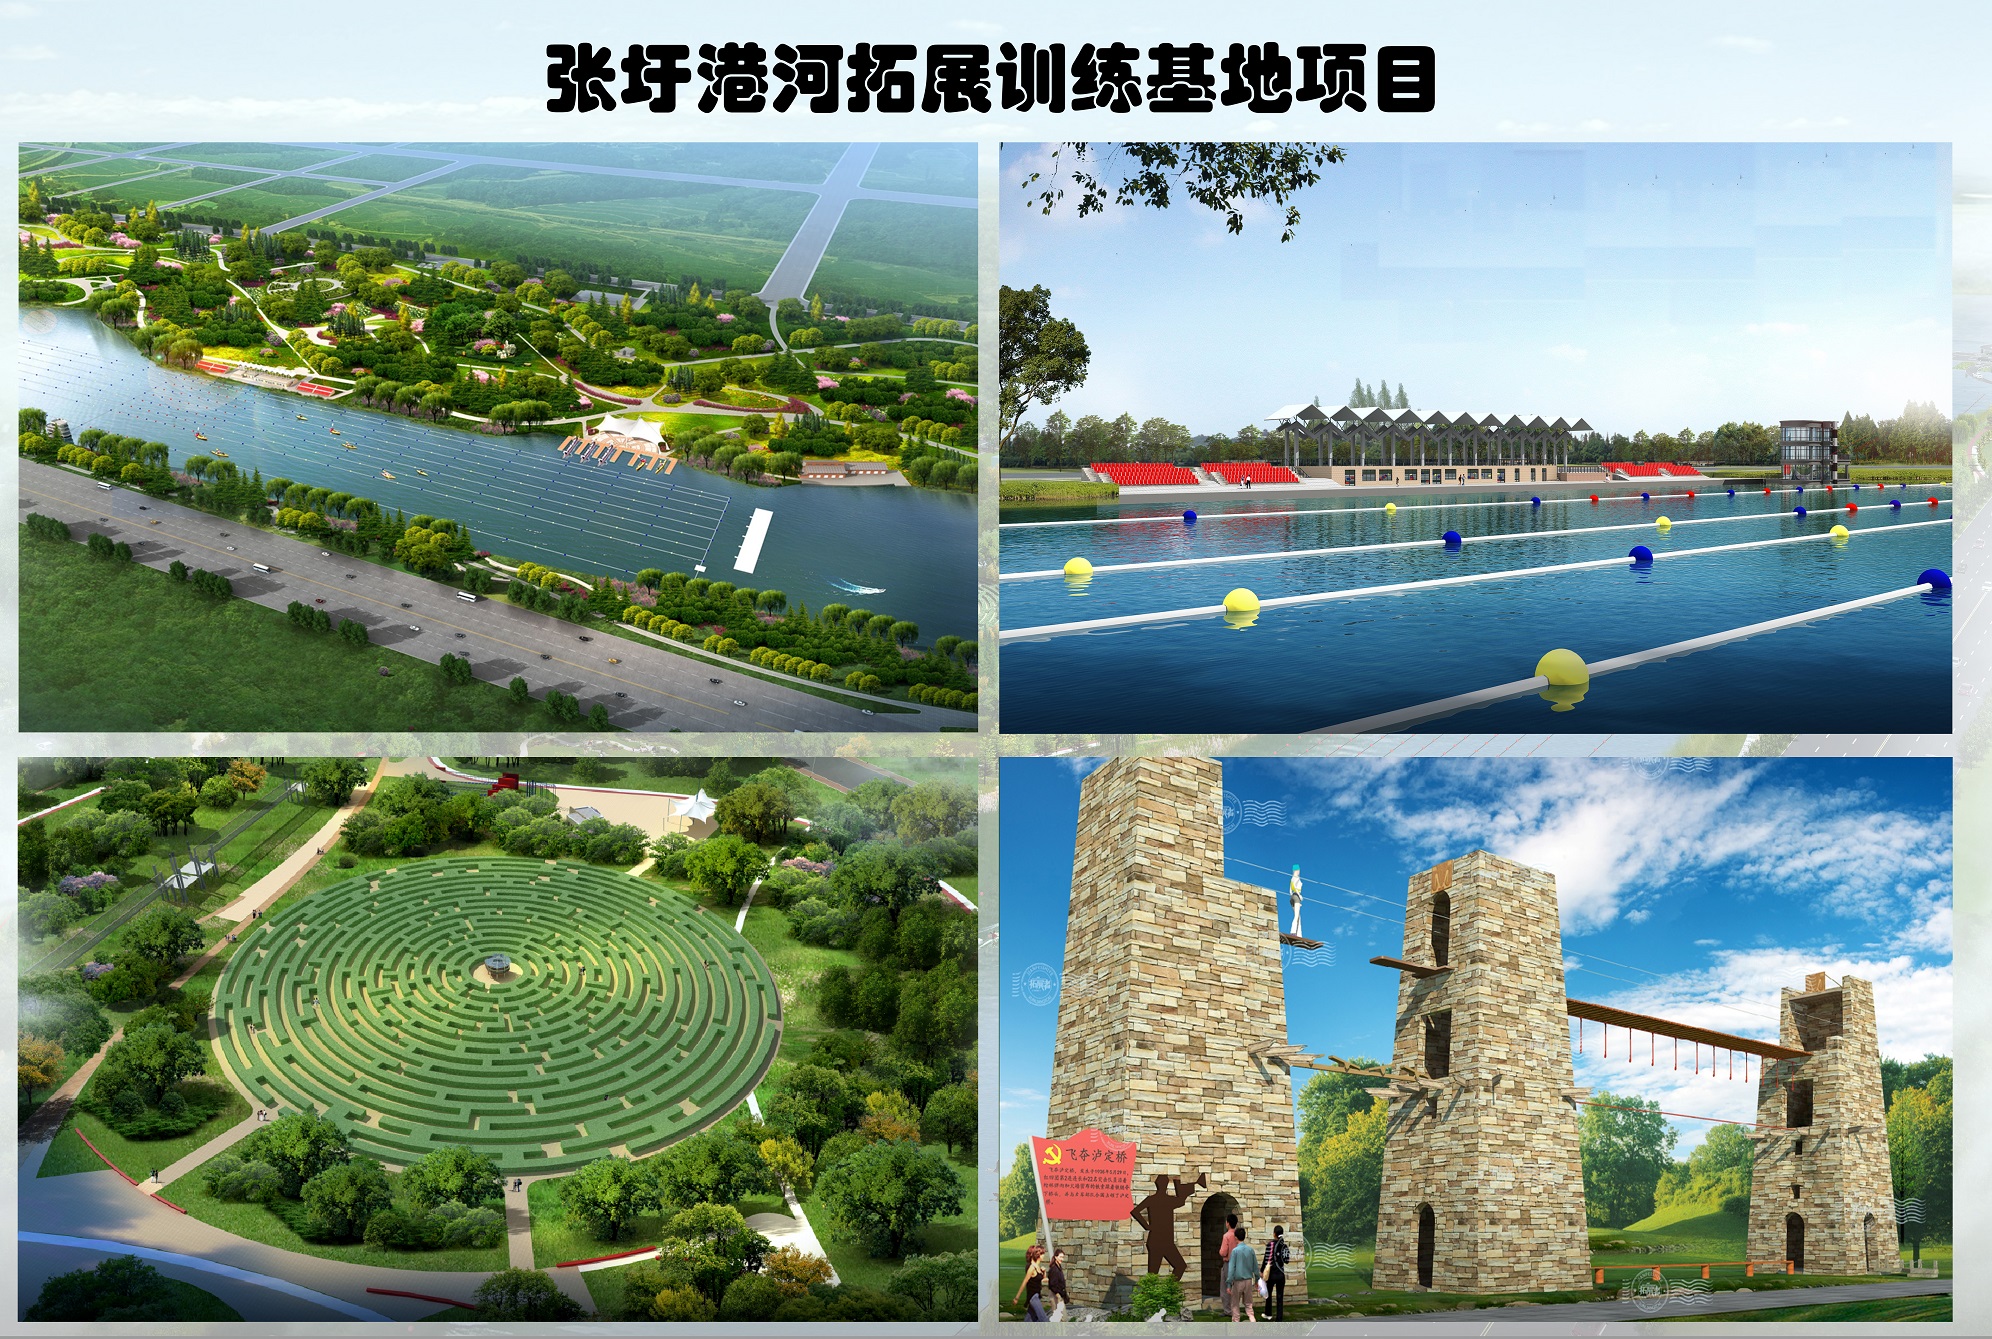 张圩港河北岸综合绿地公园(图3)